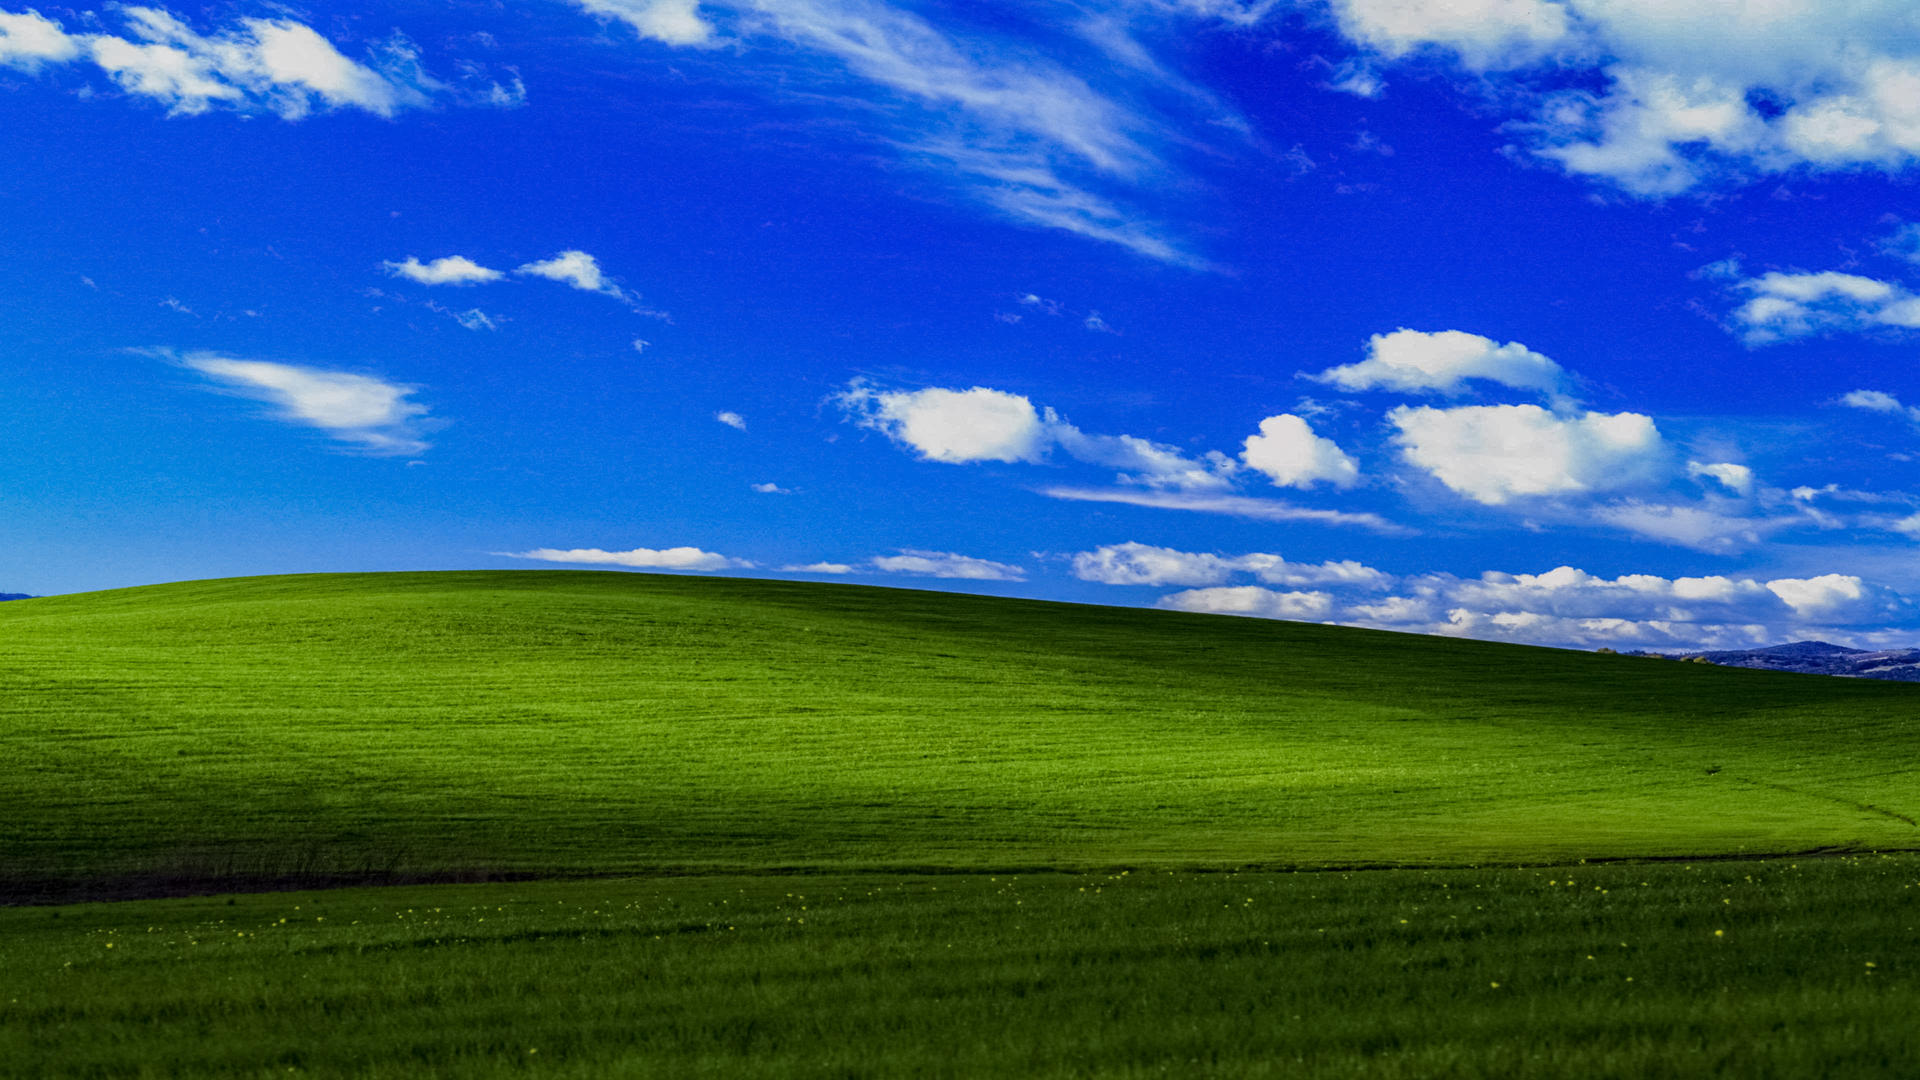 Bộ hình nền Windows XP 4K đầy màu sắc sẽ khiến mọi người trầm trồ ngưỡng mộ. Hãy tải xuống ngay để cập nhật cho màn hình của bạn một mẫu hình nền tuyệt đẹp.